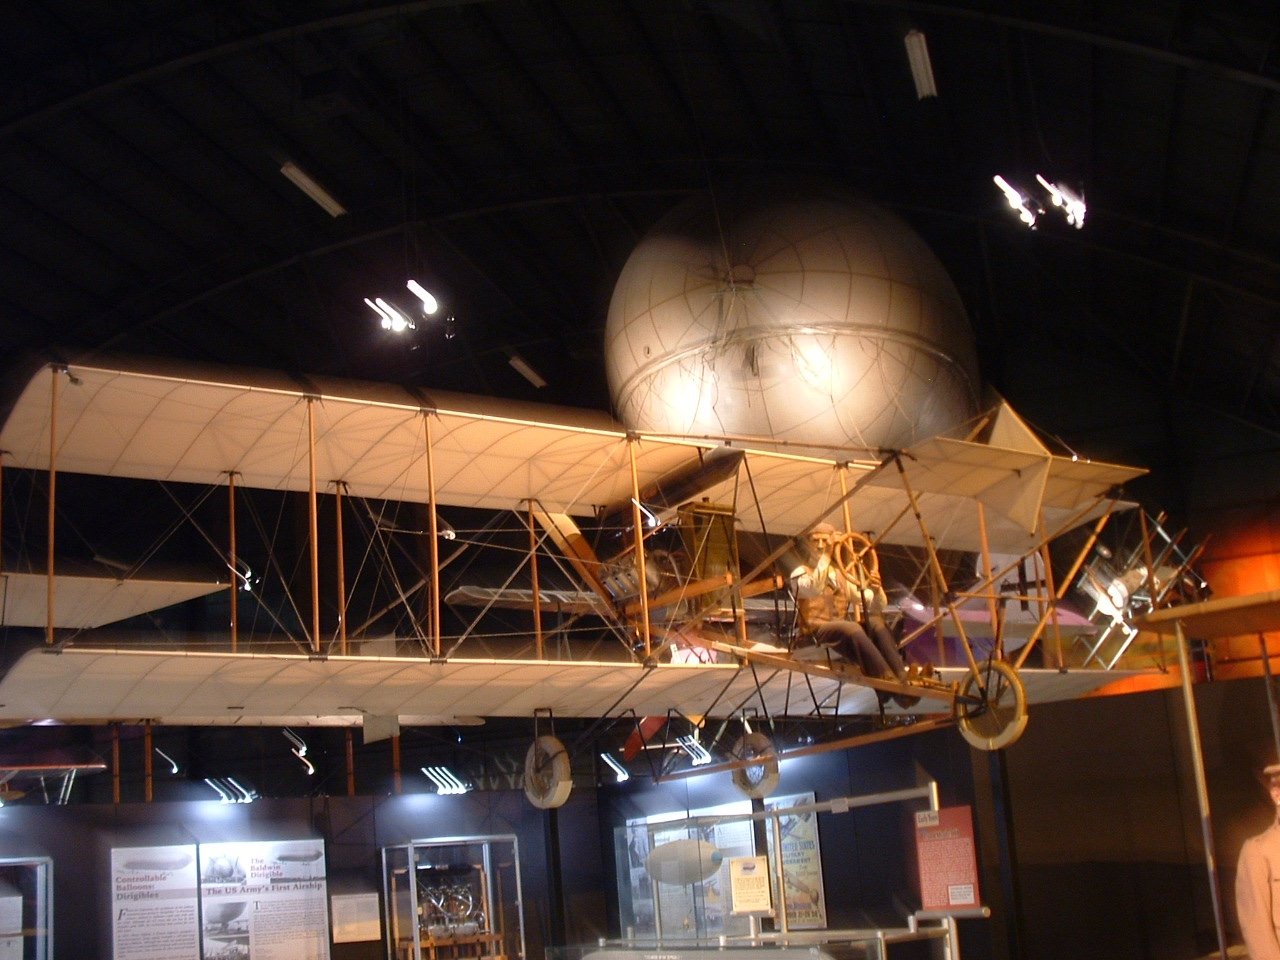 代顿飞机发明者莱特兄弟的故乡美国空军博物馆代顿艺术博物馆代顿大学